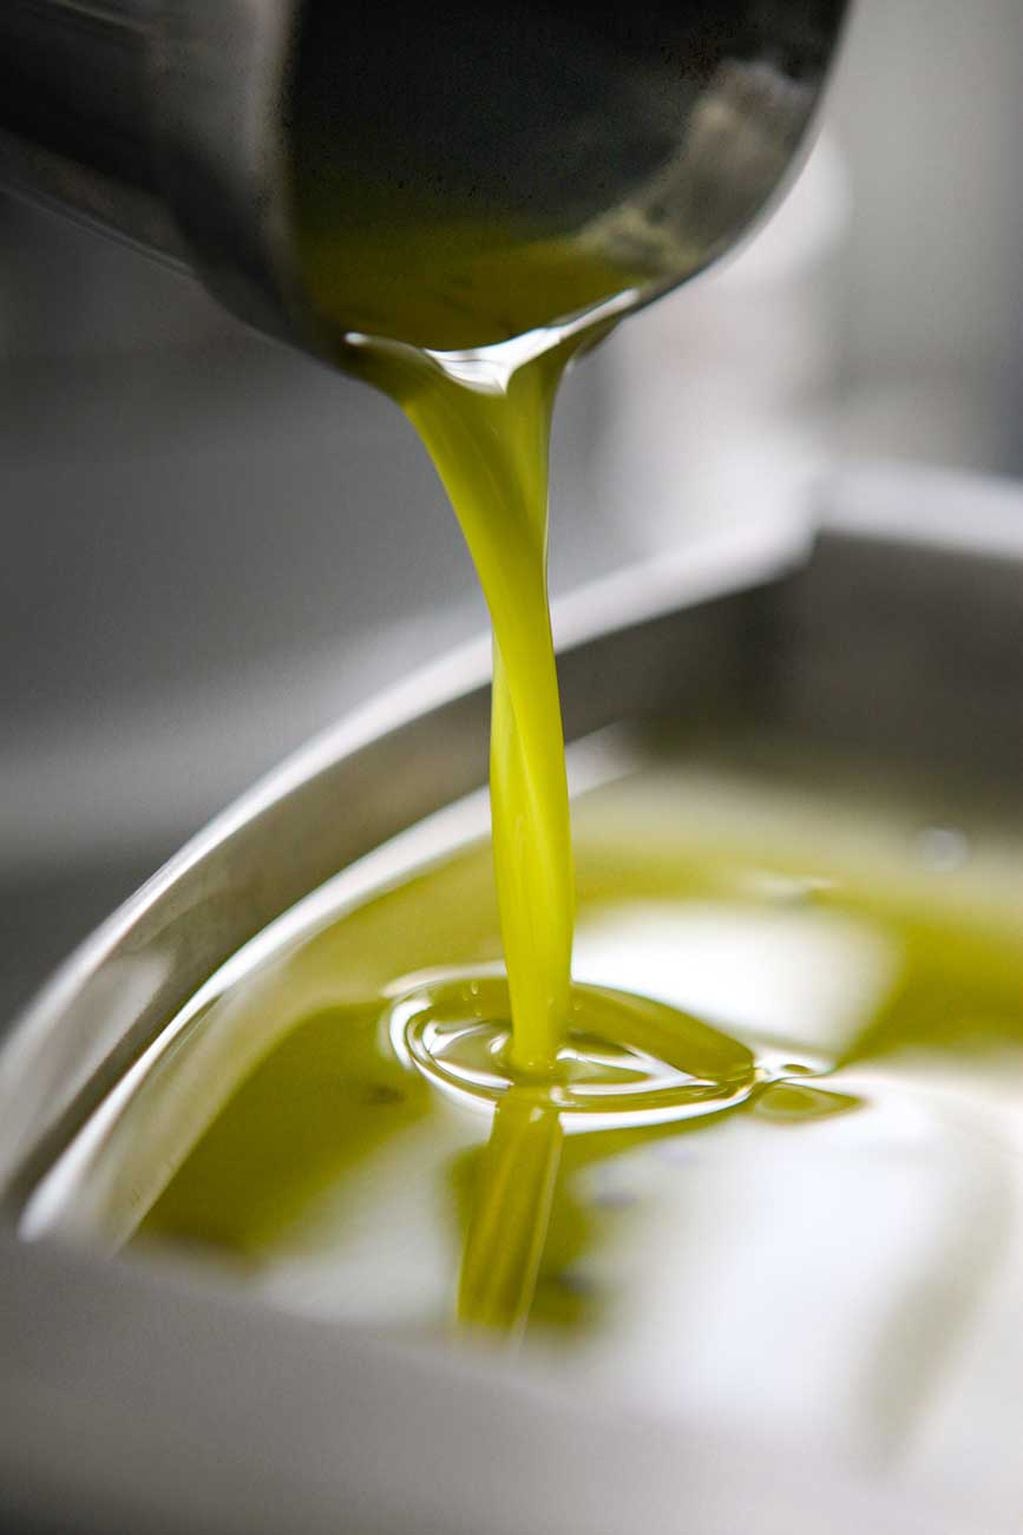 Aceite de oliva: cómo reconocer un producto de buena calidad.